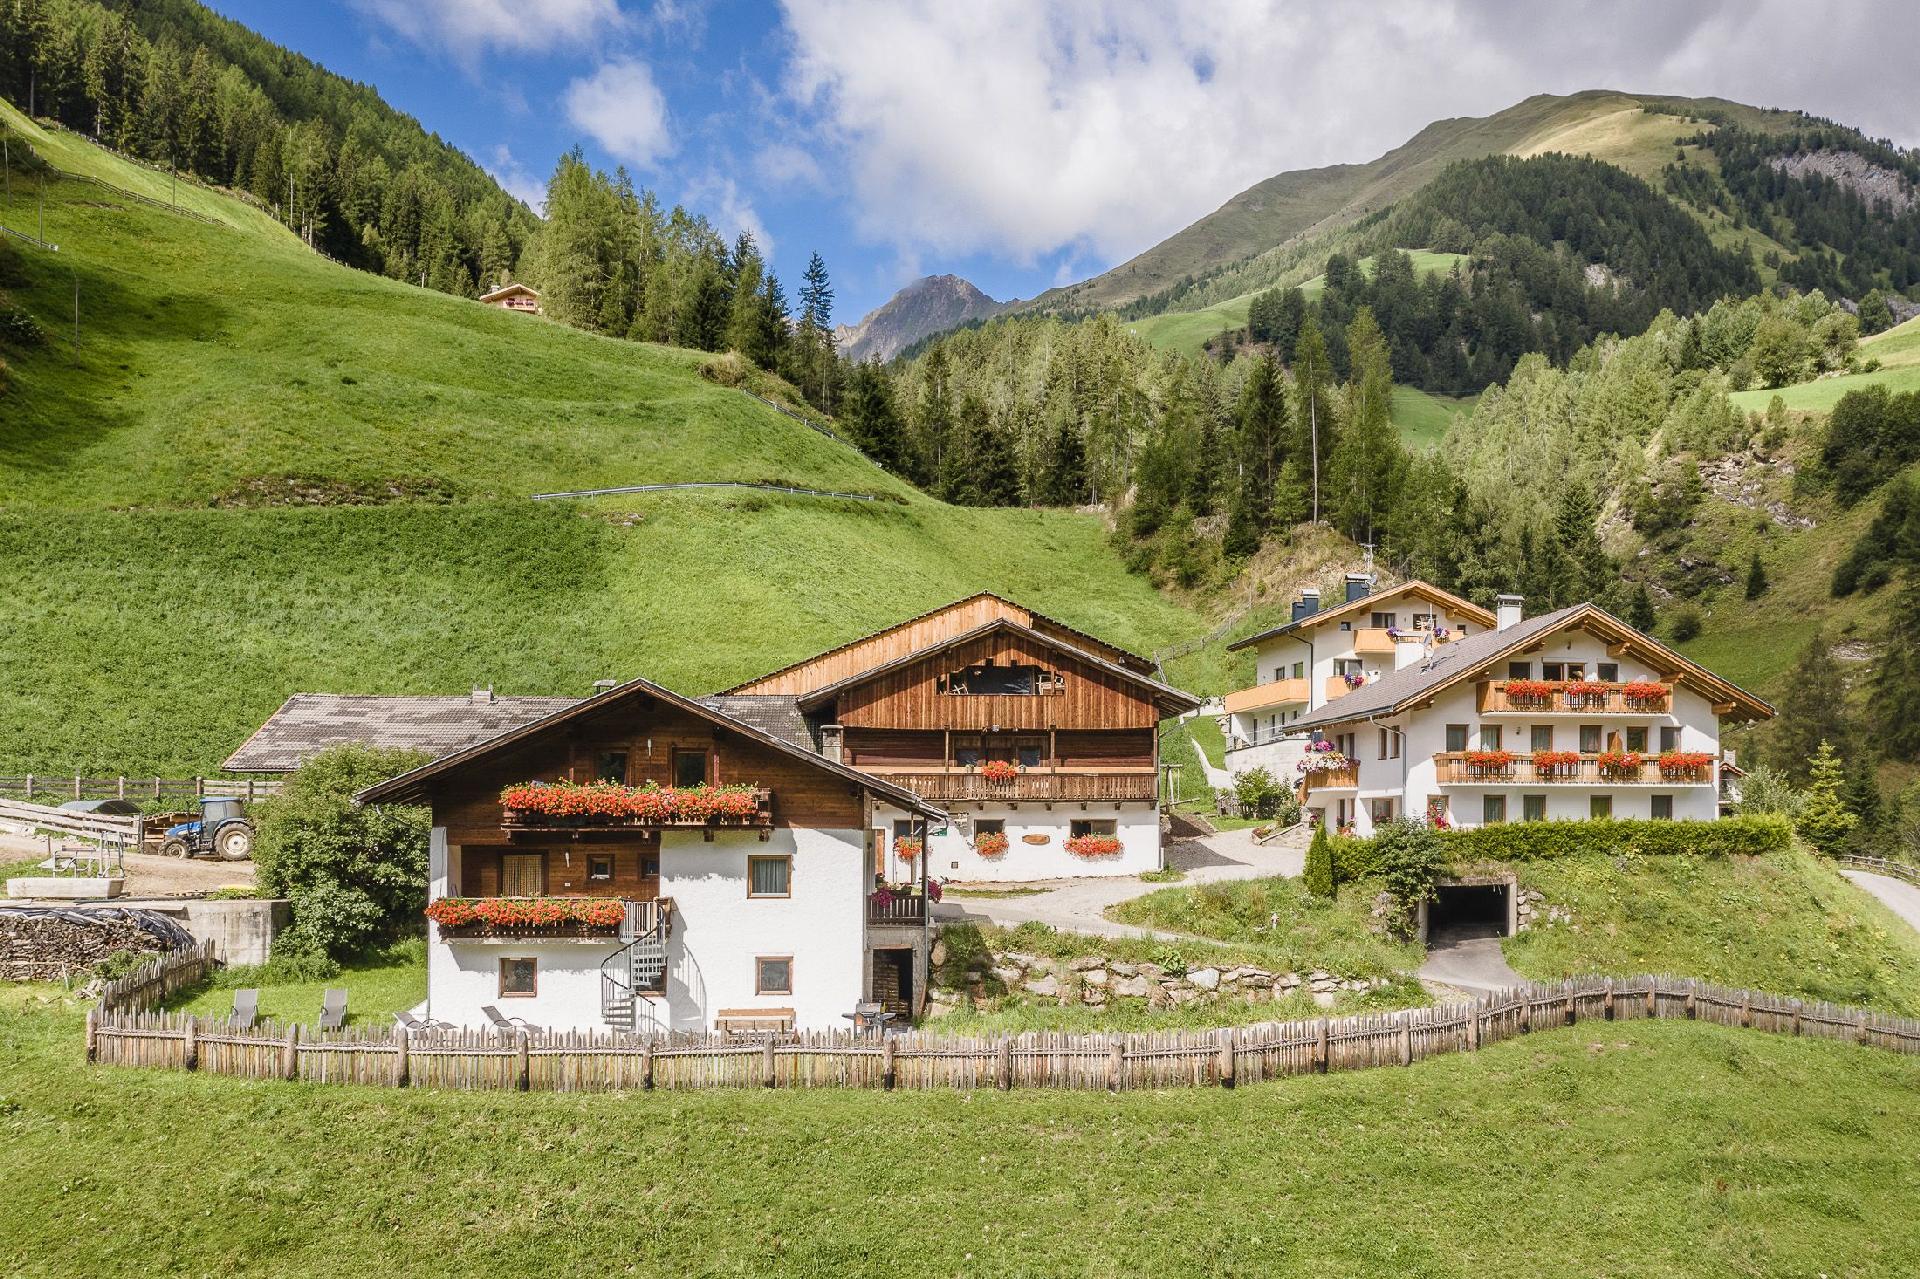 Ferienwohnung in schöner Bergkulisse mit zwei Bauernhof in Europa